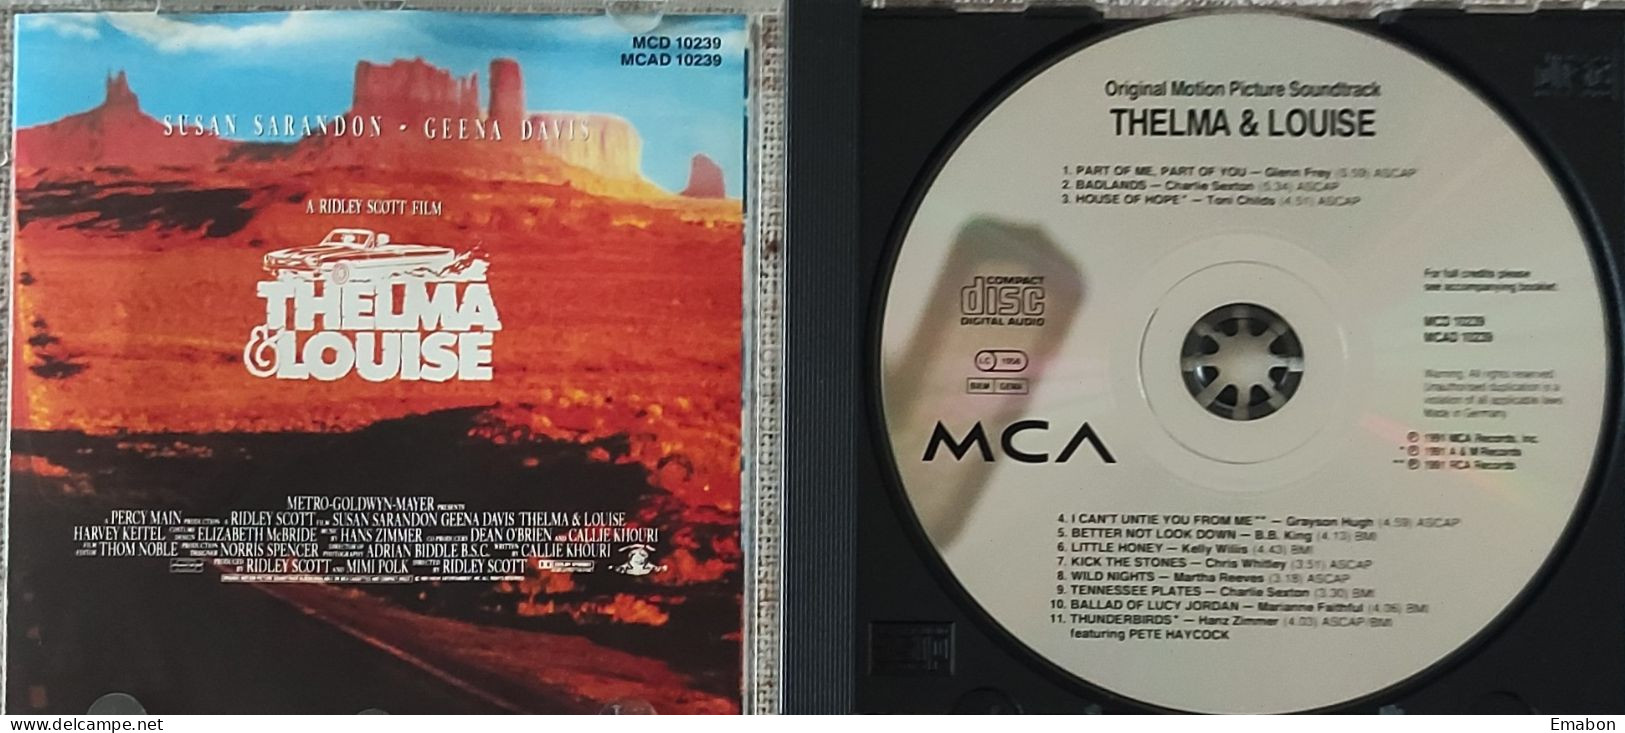 BORGATTA - FILM MUSIC  - Cd  RIDLEY SCOTT - THELMA & LOUISE - MCA RECORDS 1991- USATO In Buono Stato - Soundtracks, Film Music